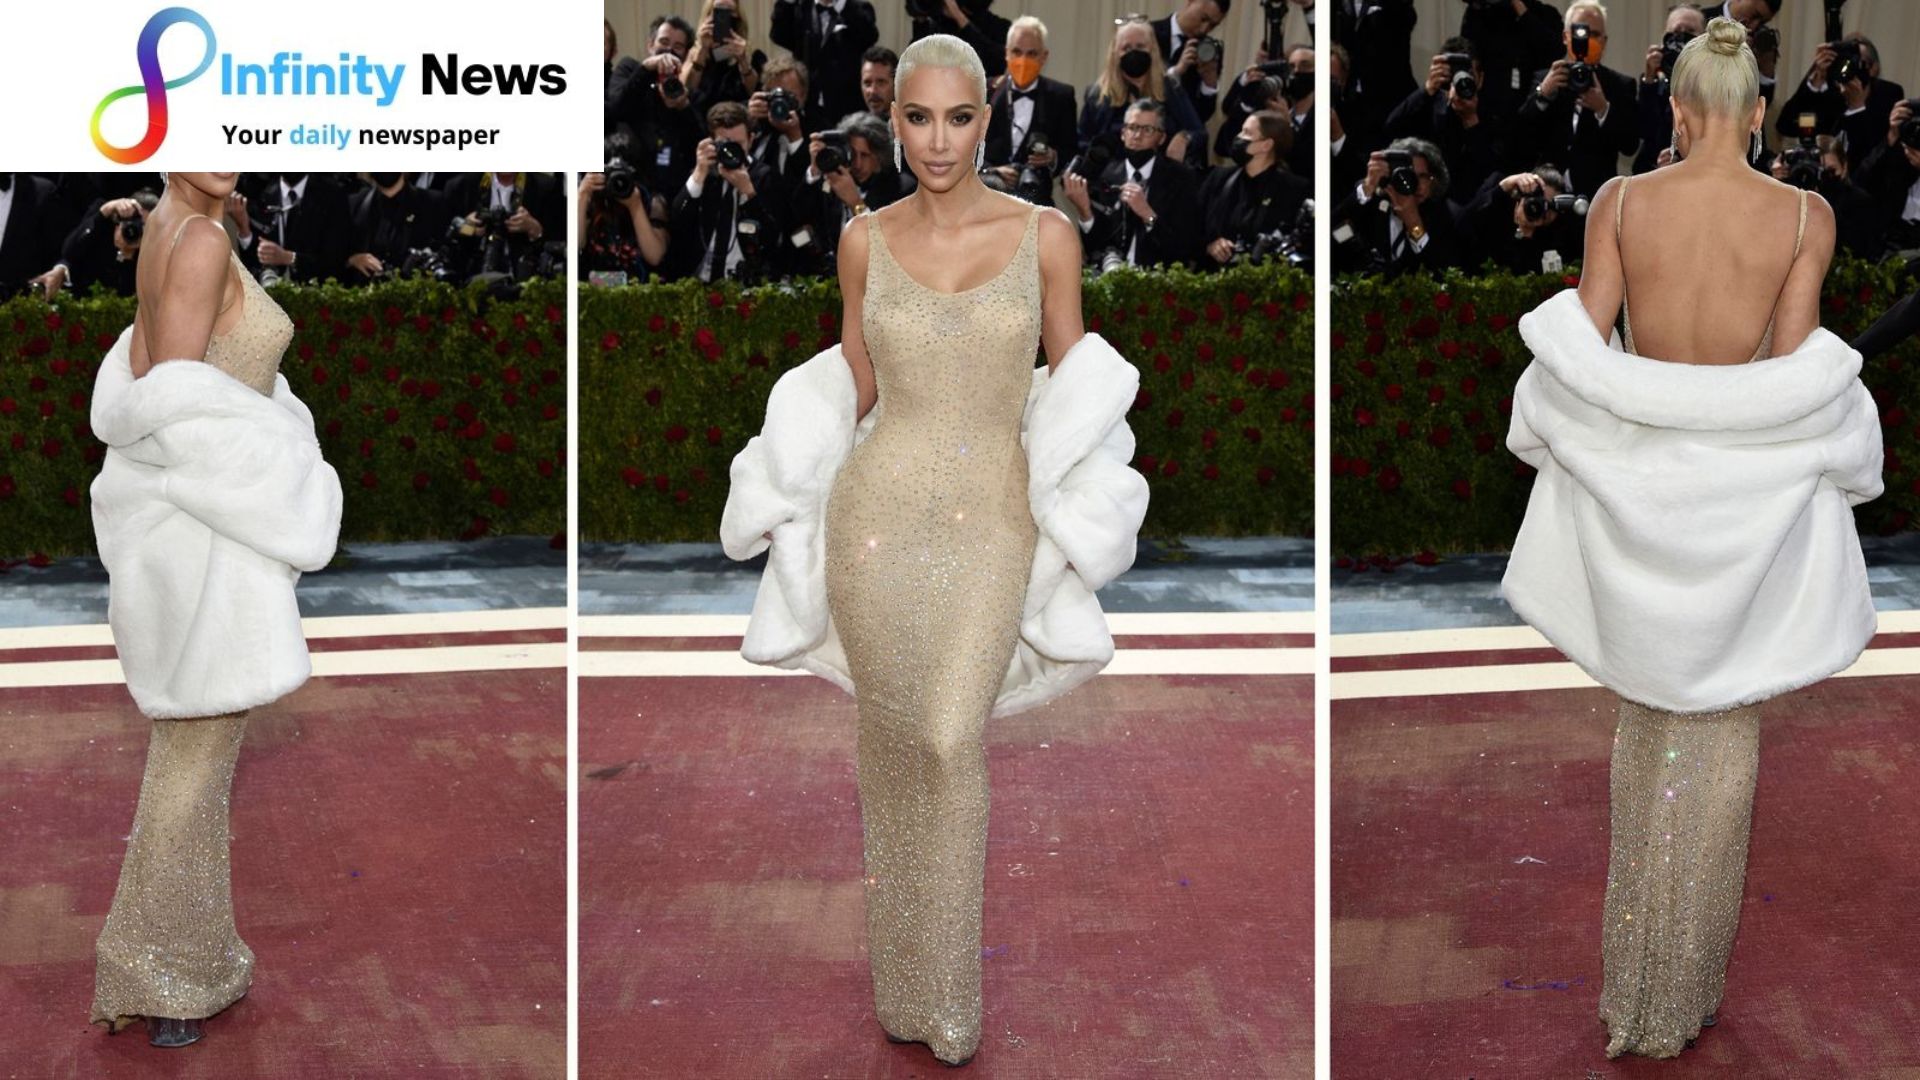 Kim Kardashian takes Met Gala show showing up in Monroes dress